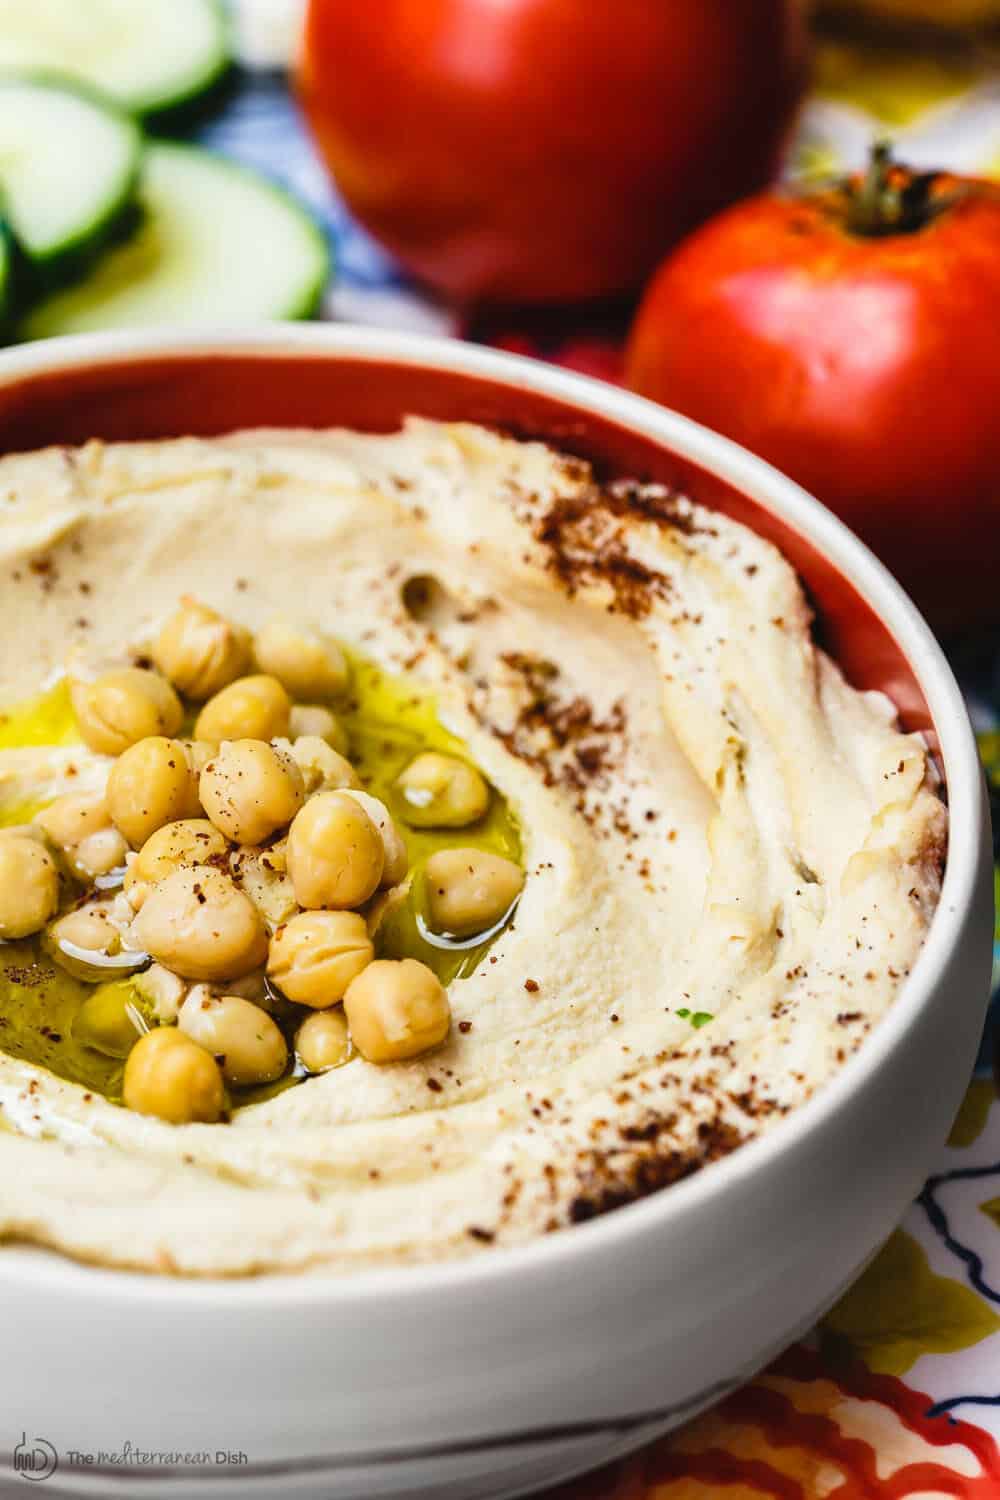 BEST Classic Hummus Recipe you'll find!